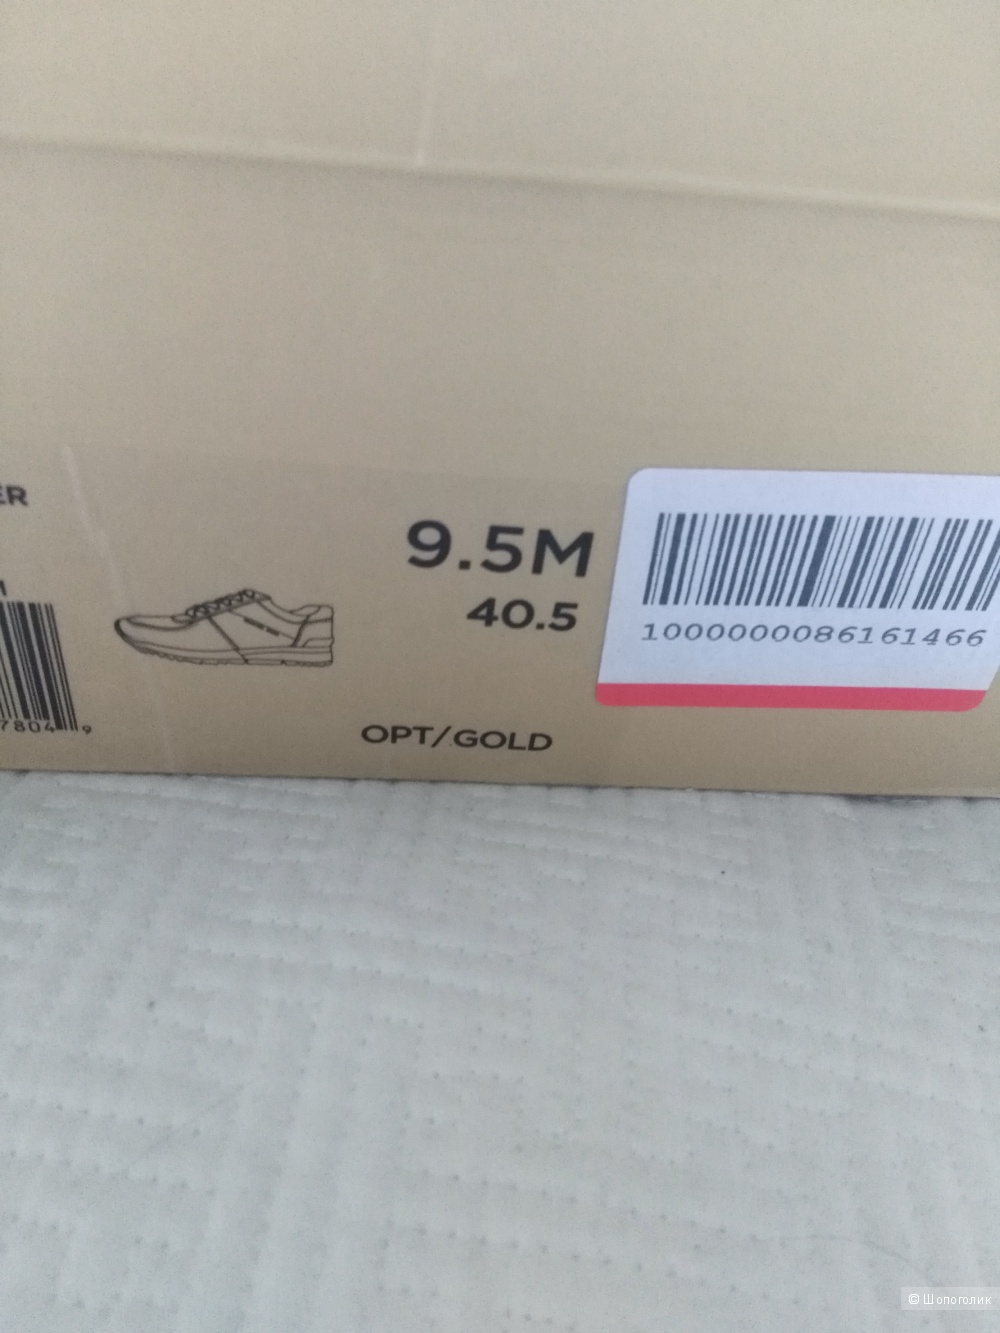 Кожаные кроссовки Michael Kors, US9.5; 40,5 размер